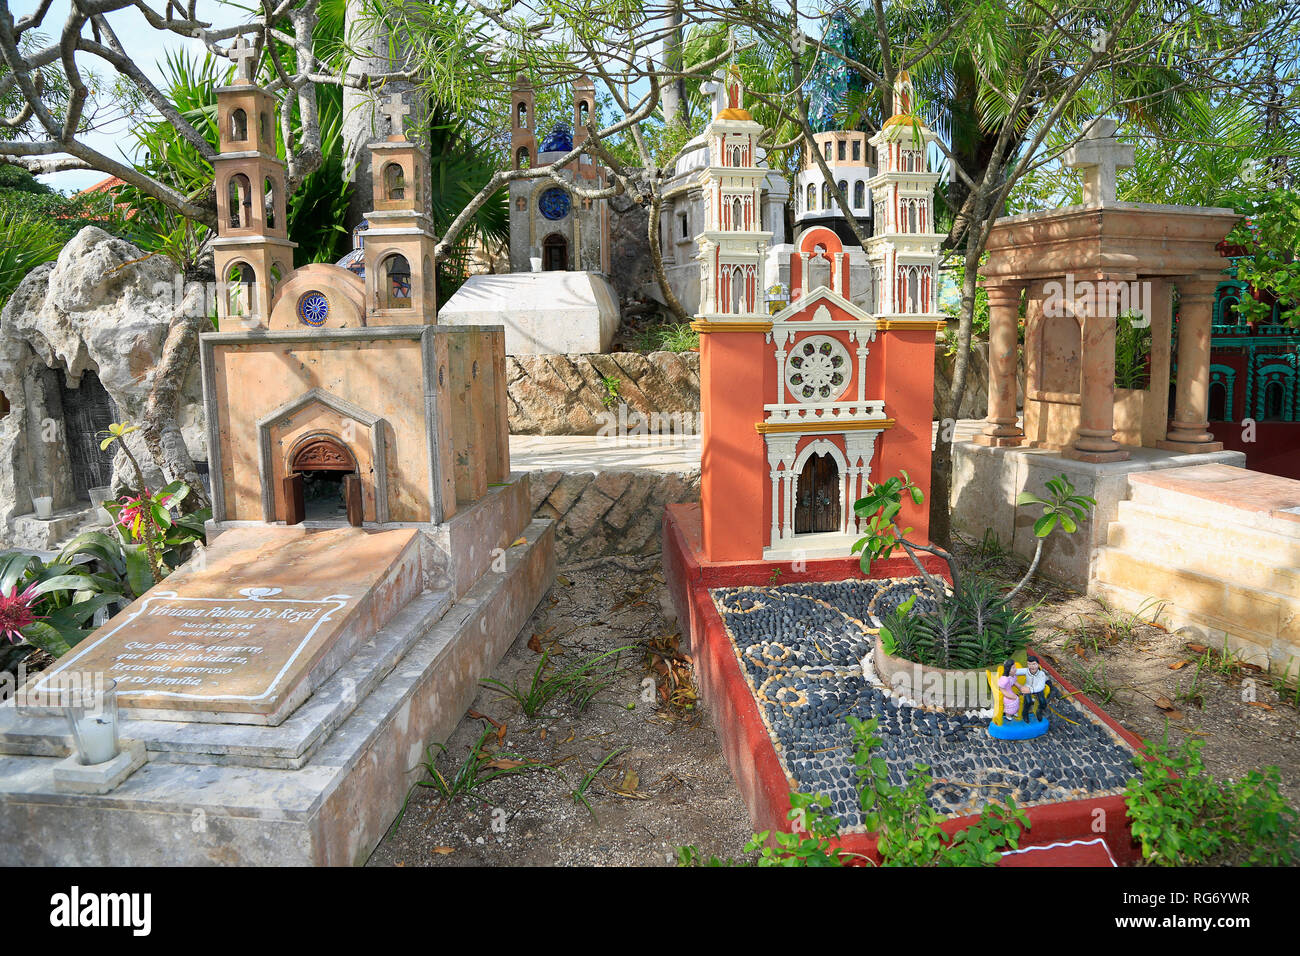 Cimitero tradizionale museo all'aperto nel villaggio Maya, attrazione xcaret park. È un buon esempio della fusione tra Maya e influenza spagnola Foto Stock